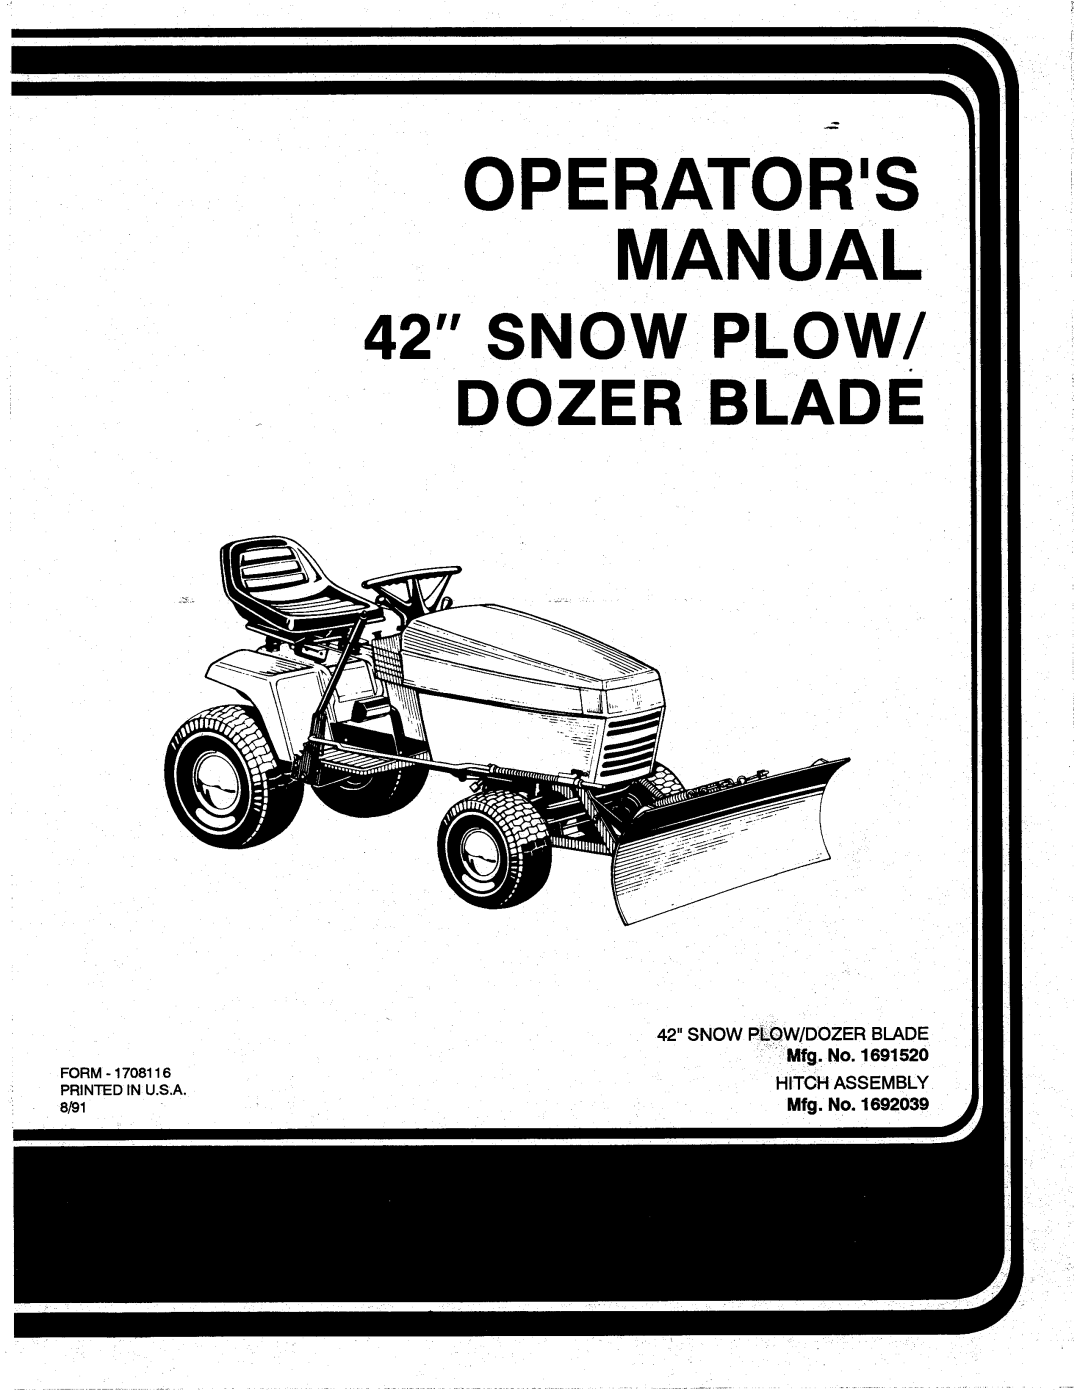 Snapper 1692039 manual 